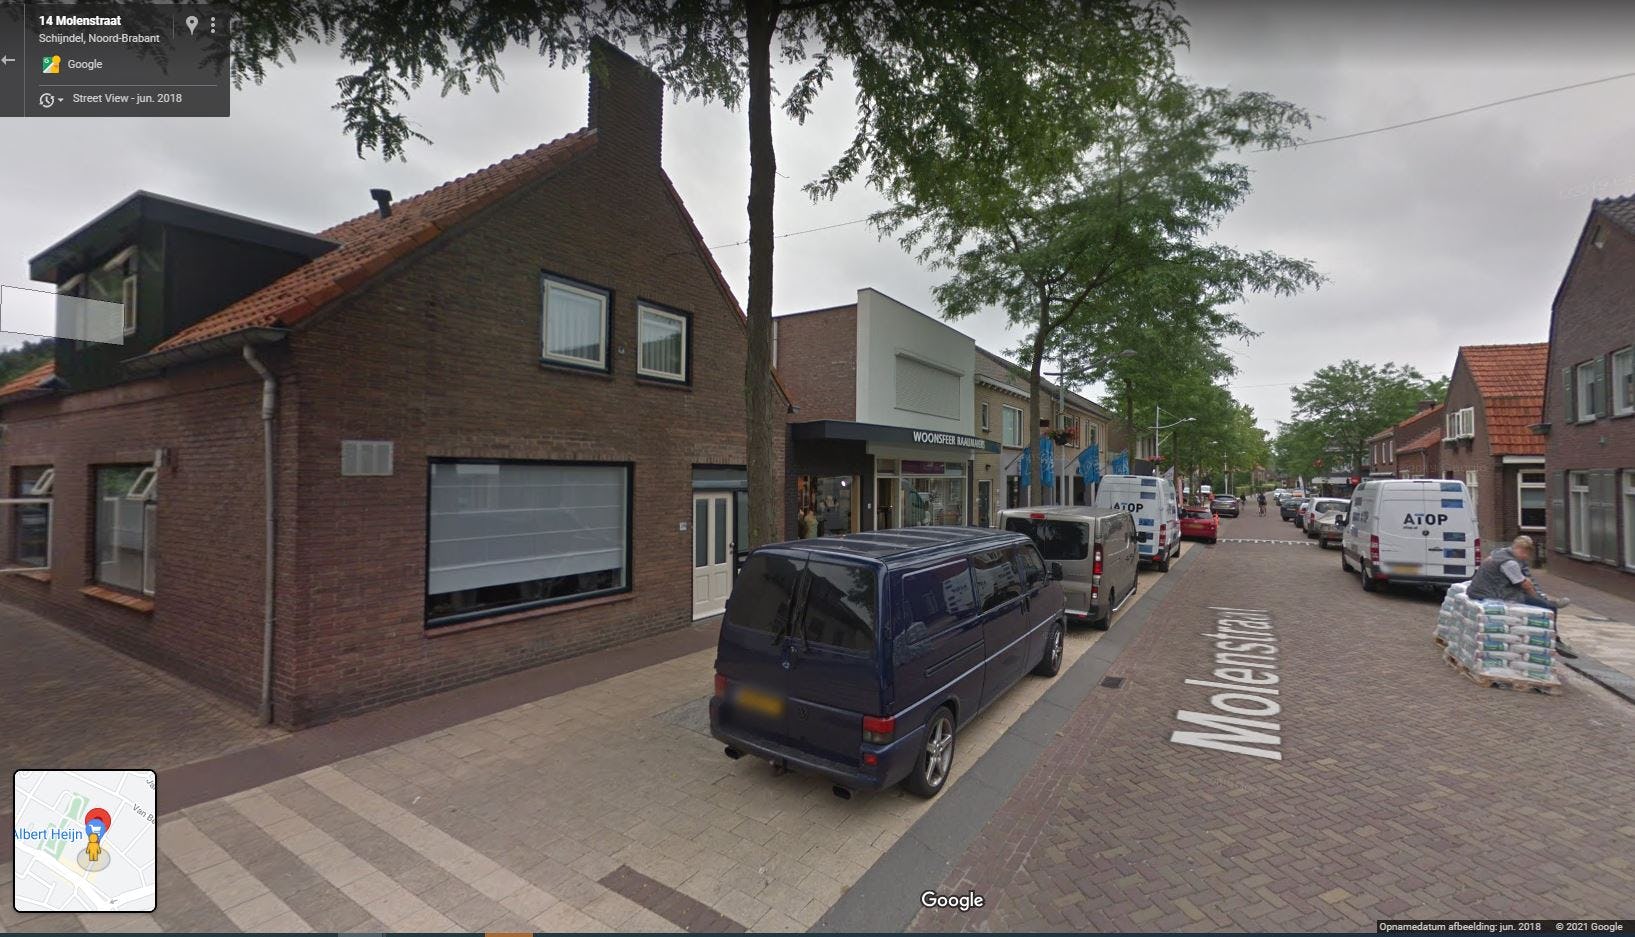 Albert Heijn Molenstraat in Schijndel krijgt eigen parkeerterrein. Foto: Google Streetview.